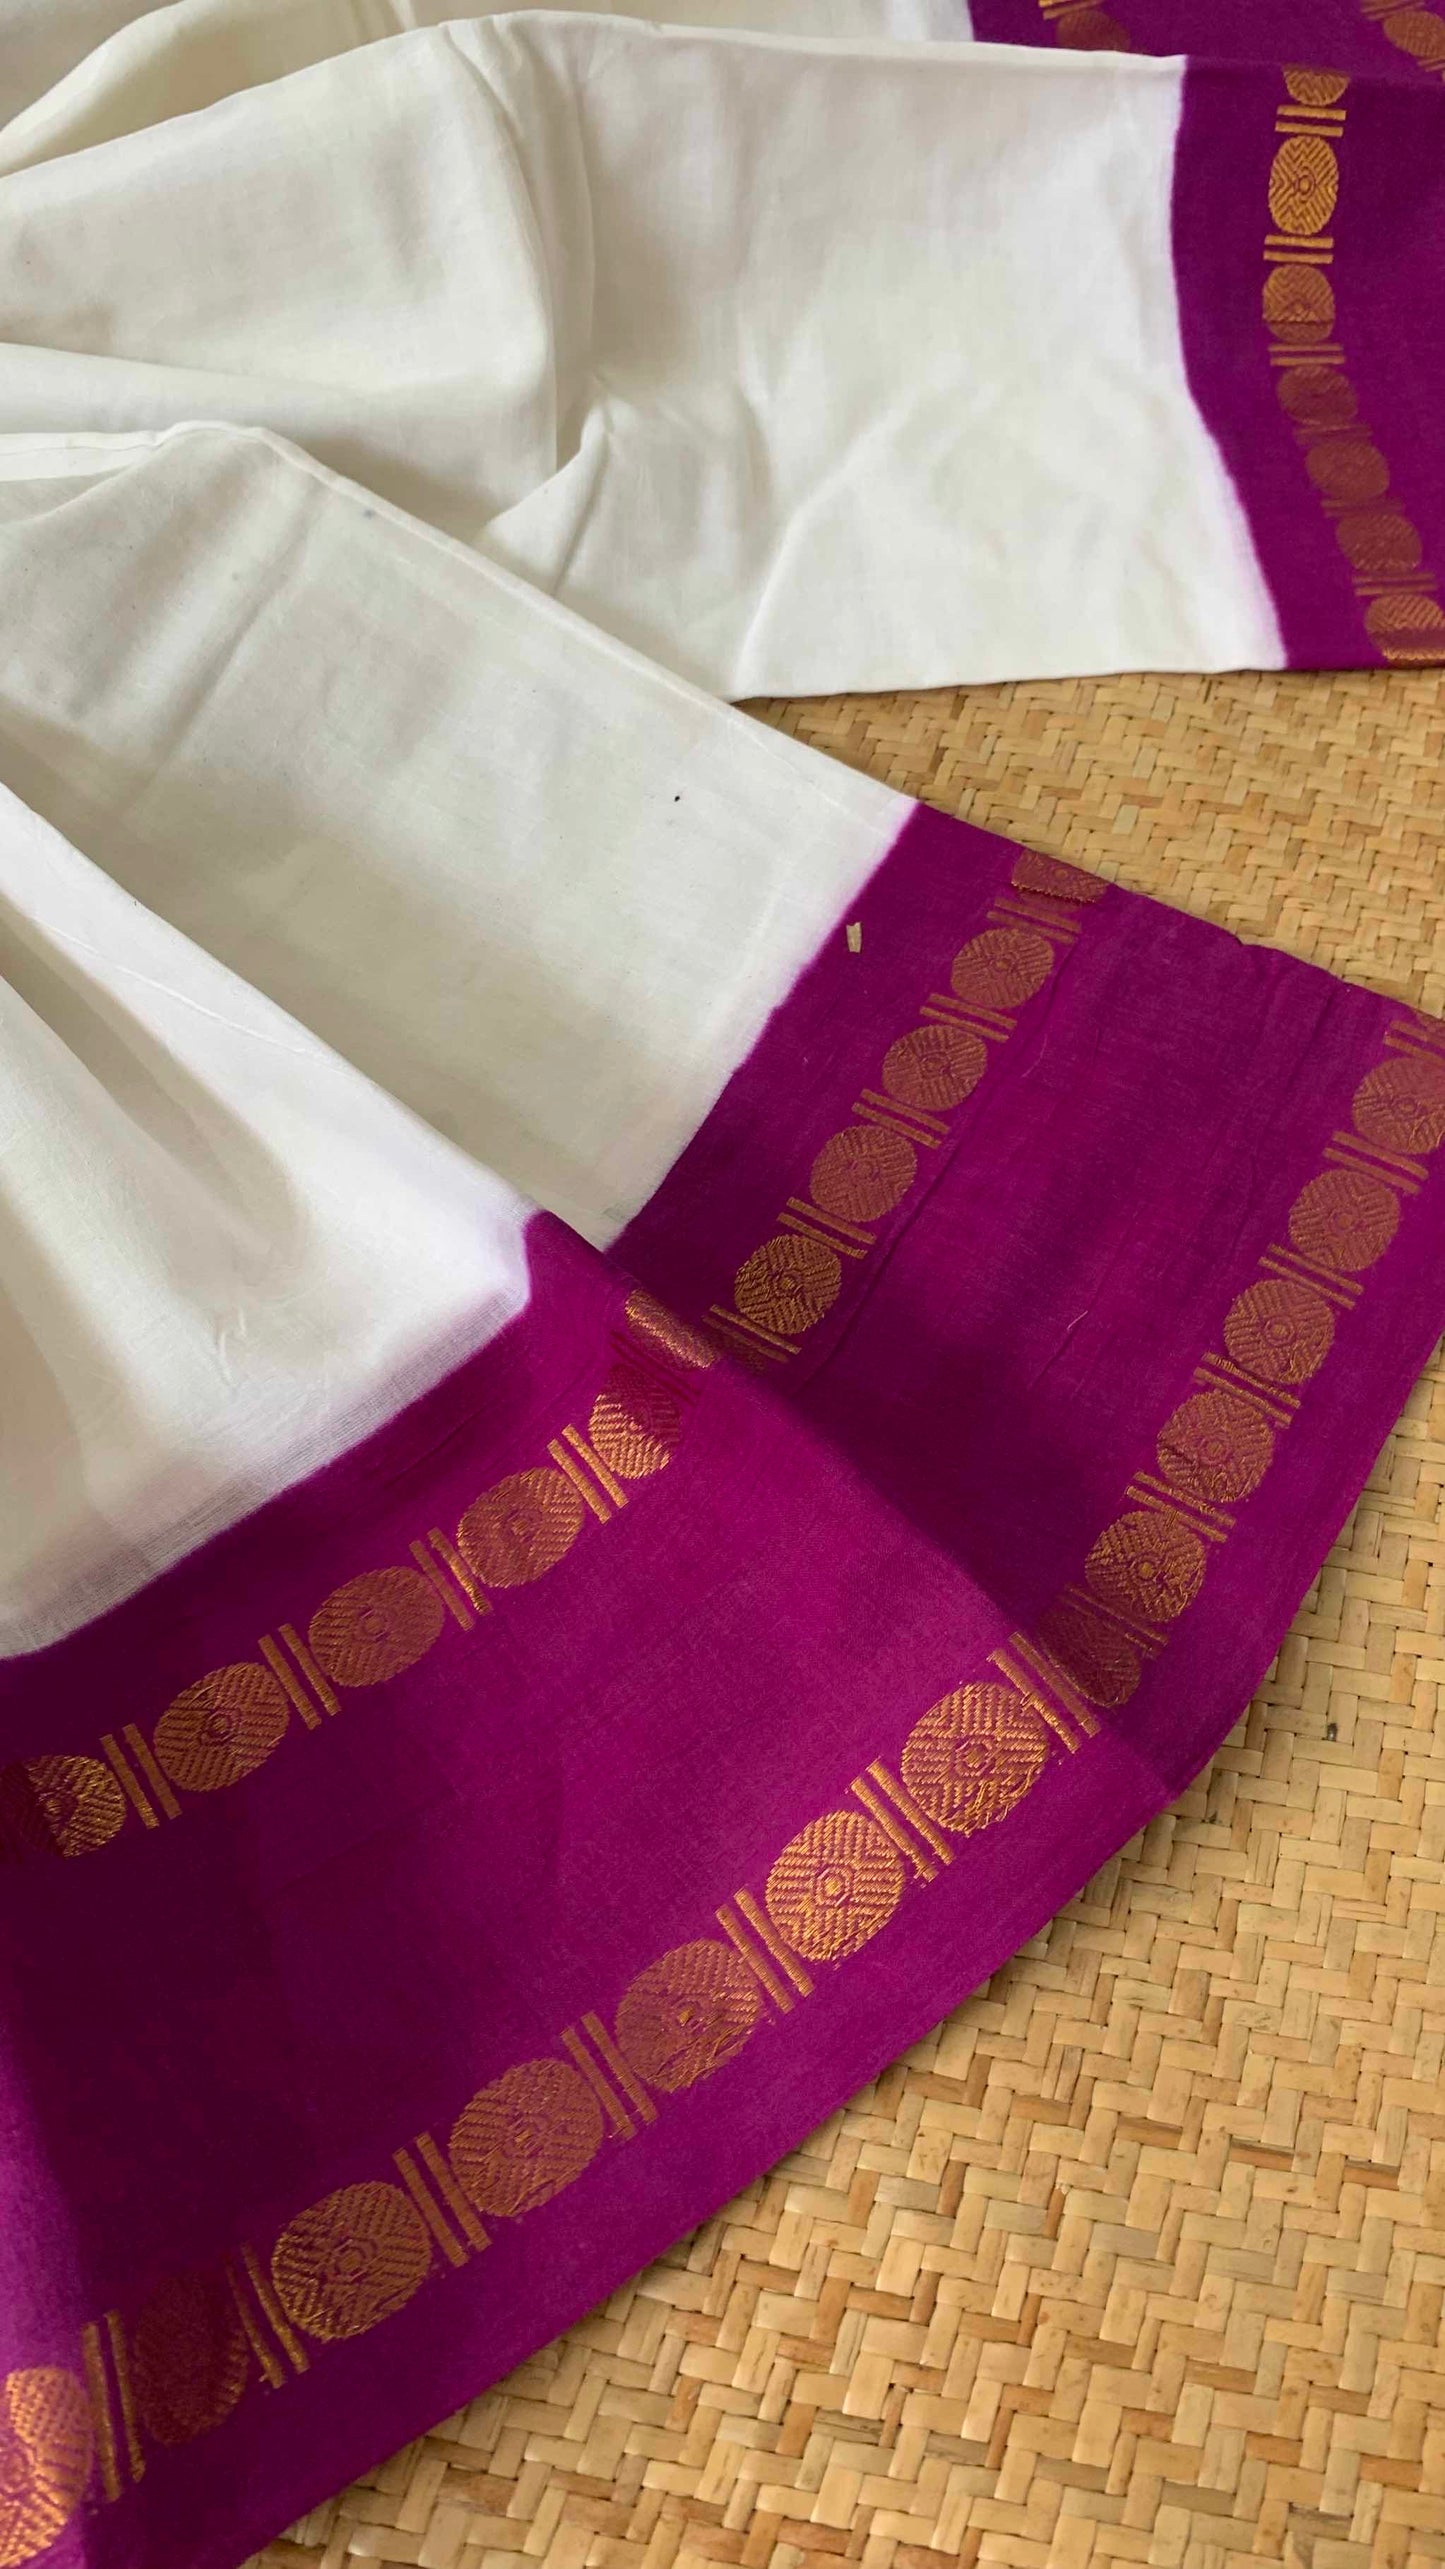 Pure white Saree With Purple Border, Zari Rudraksham Rettai Pettu Border With Running Blouse, Clamp dyed (Kattu sayam).